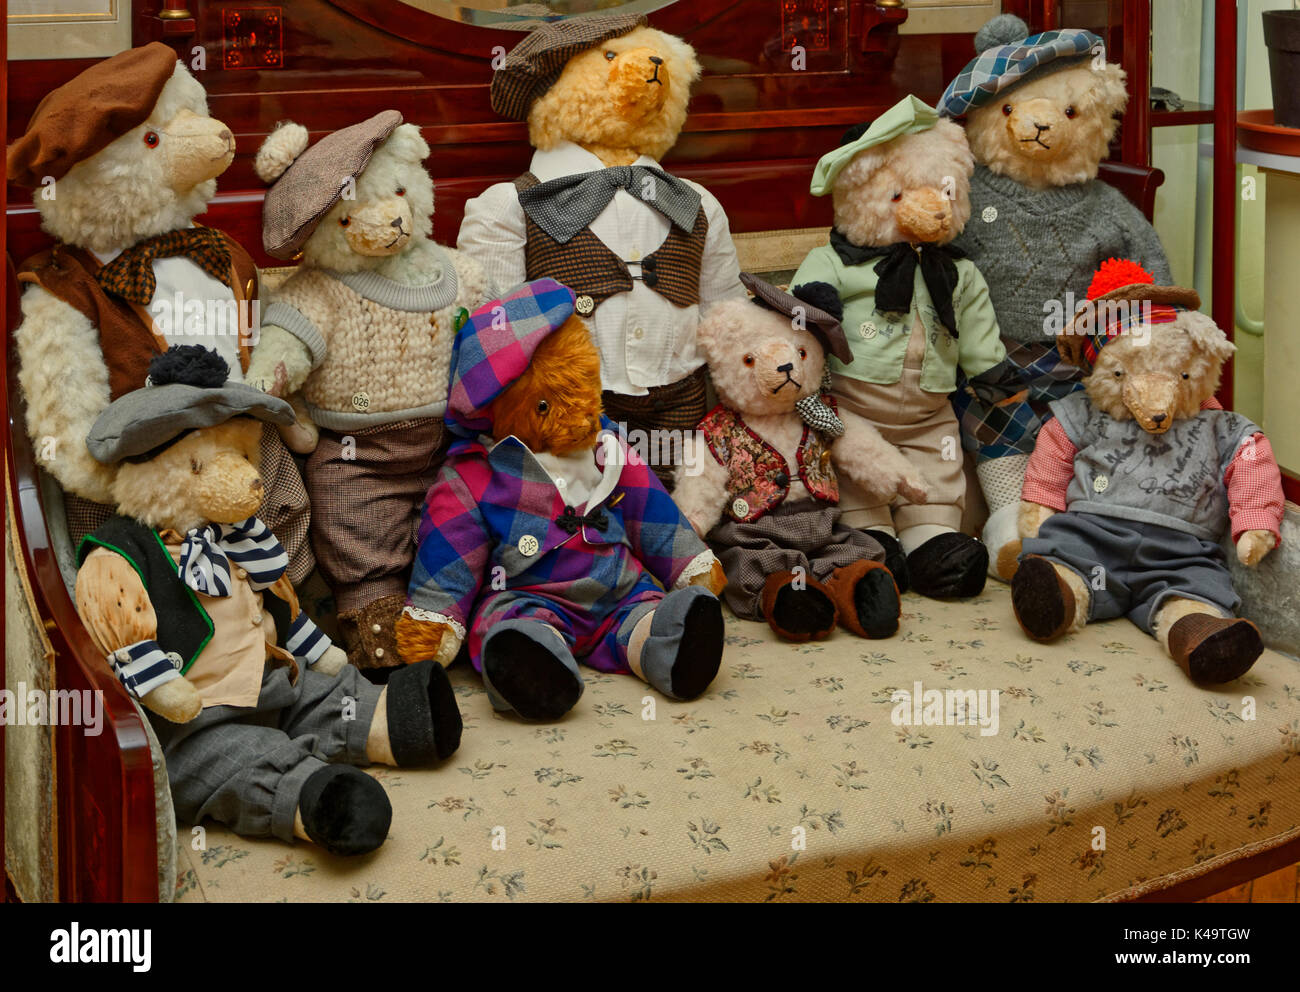 dressed teddy bears